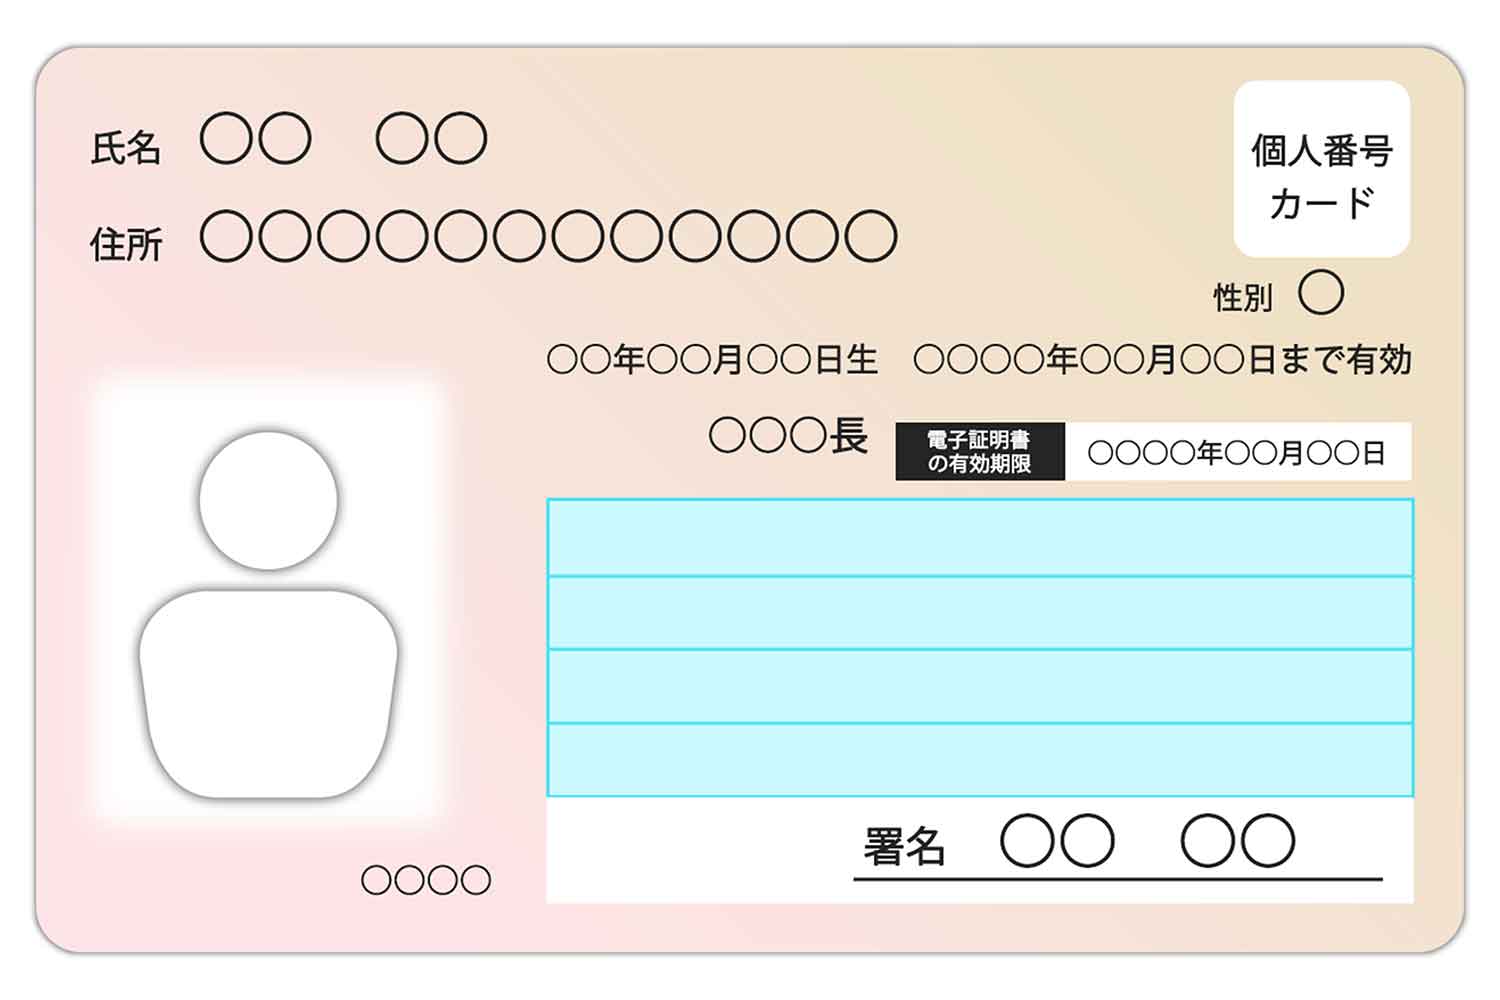 日本のマイナンバーカードのイメージ写真